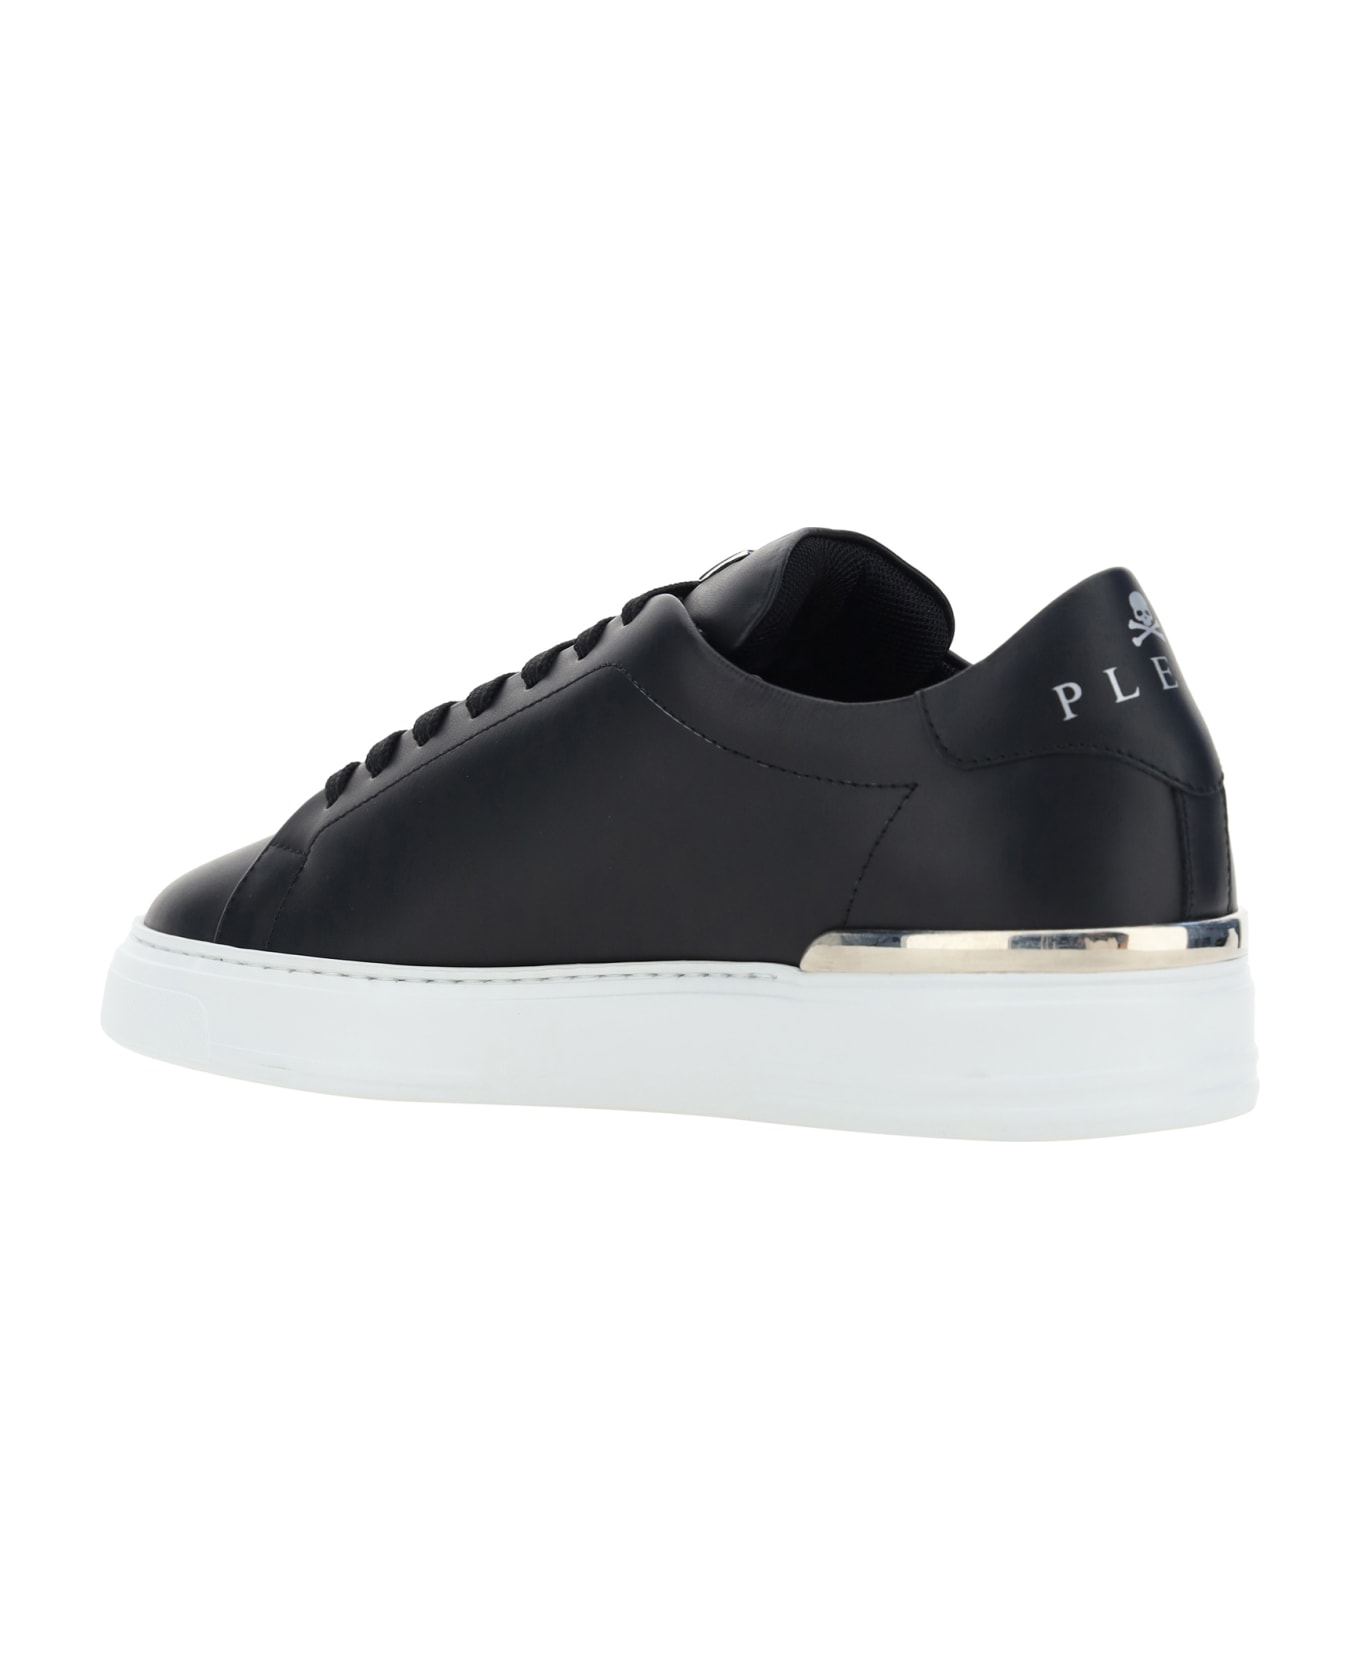 Philipp Plein Hexagon Low Top Sneakers - Black